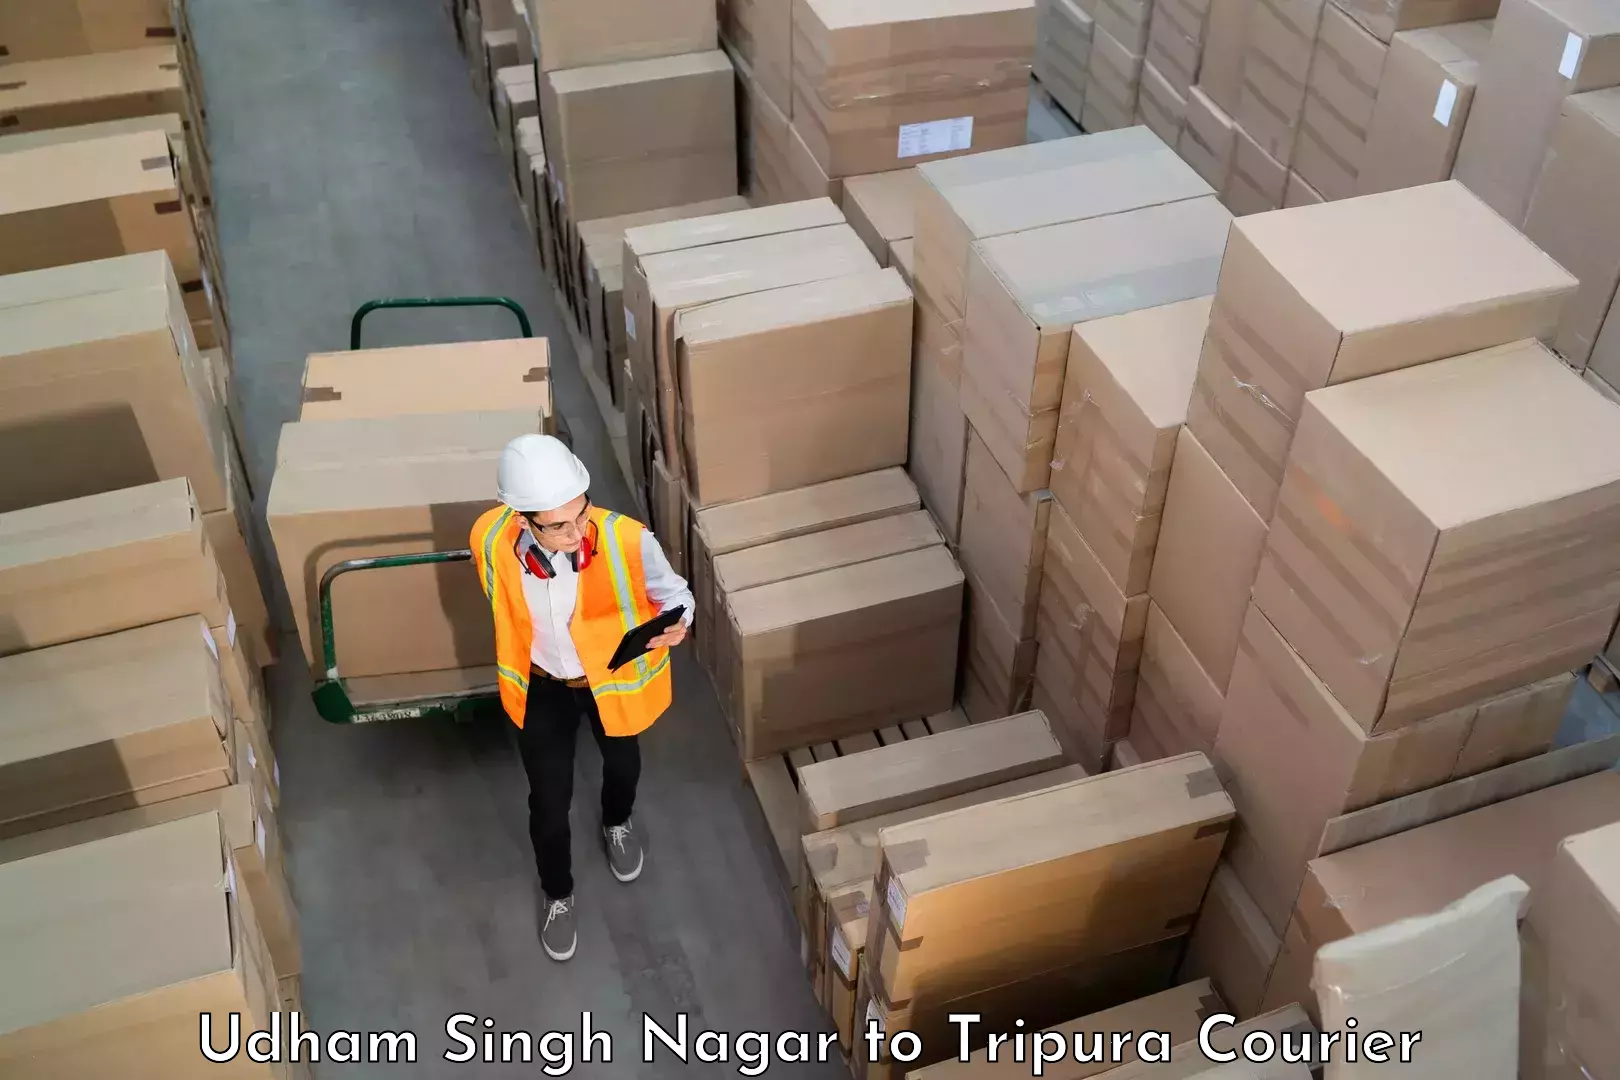 Luggage shipping guide Udham Singh Nagar to Tripura